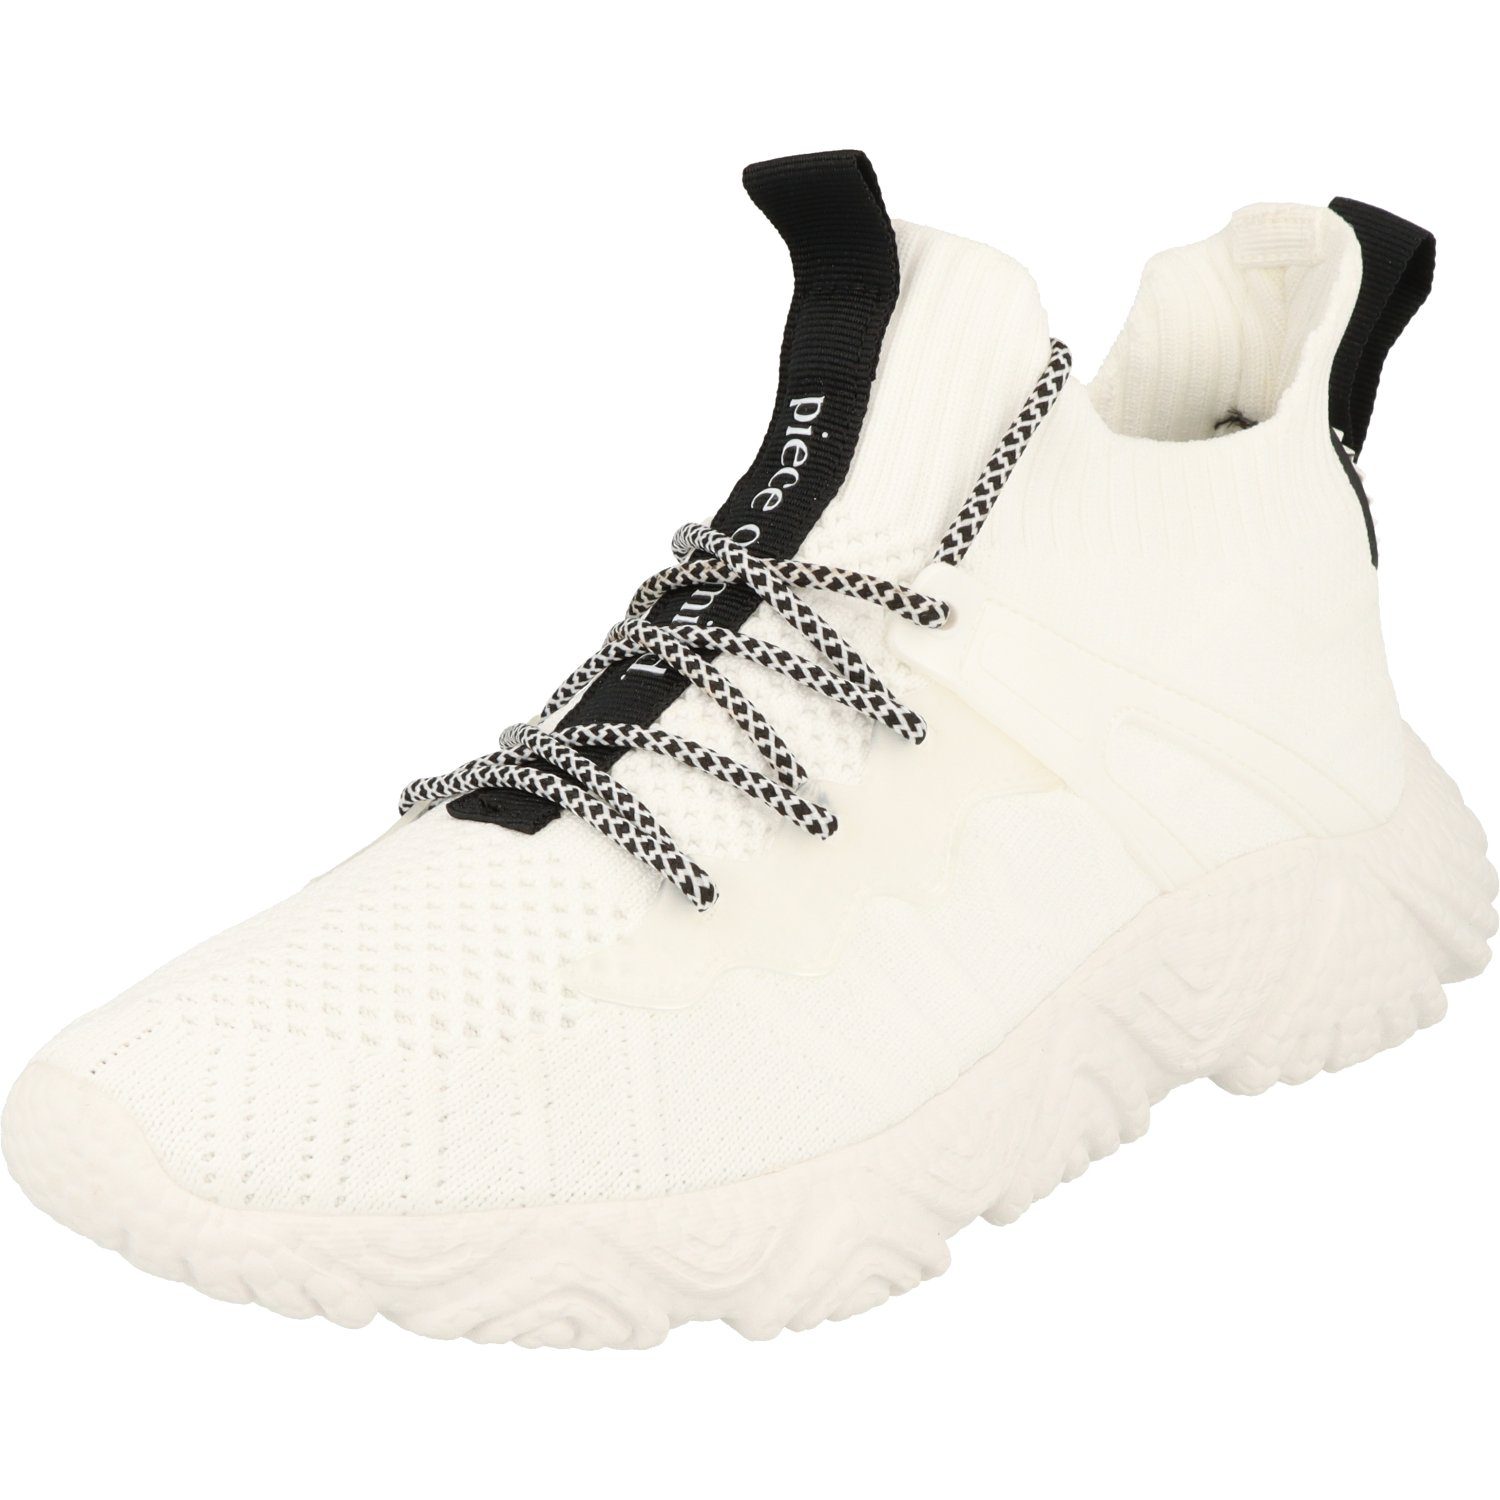 Schuhe Damen White sportliche piece mind. Halbschuhe Schnürschuh of 236-022 Sneaker